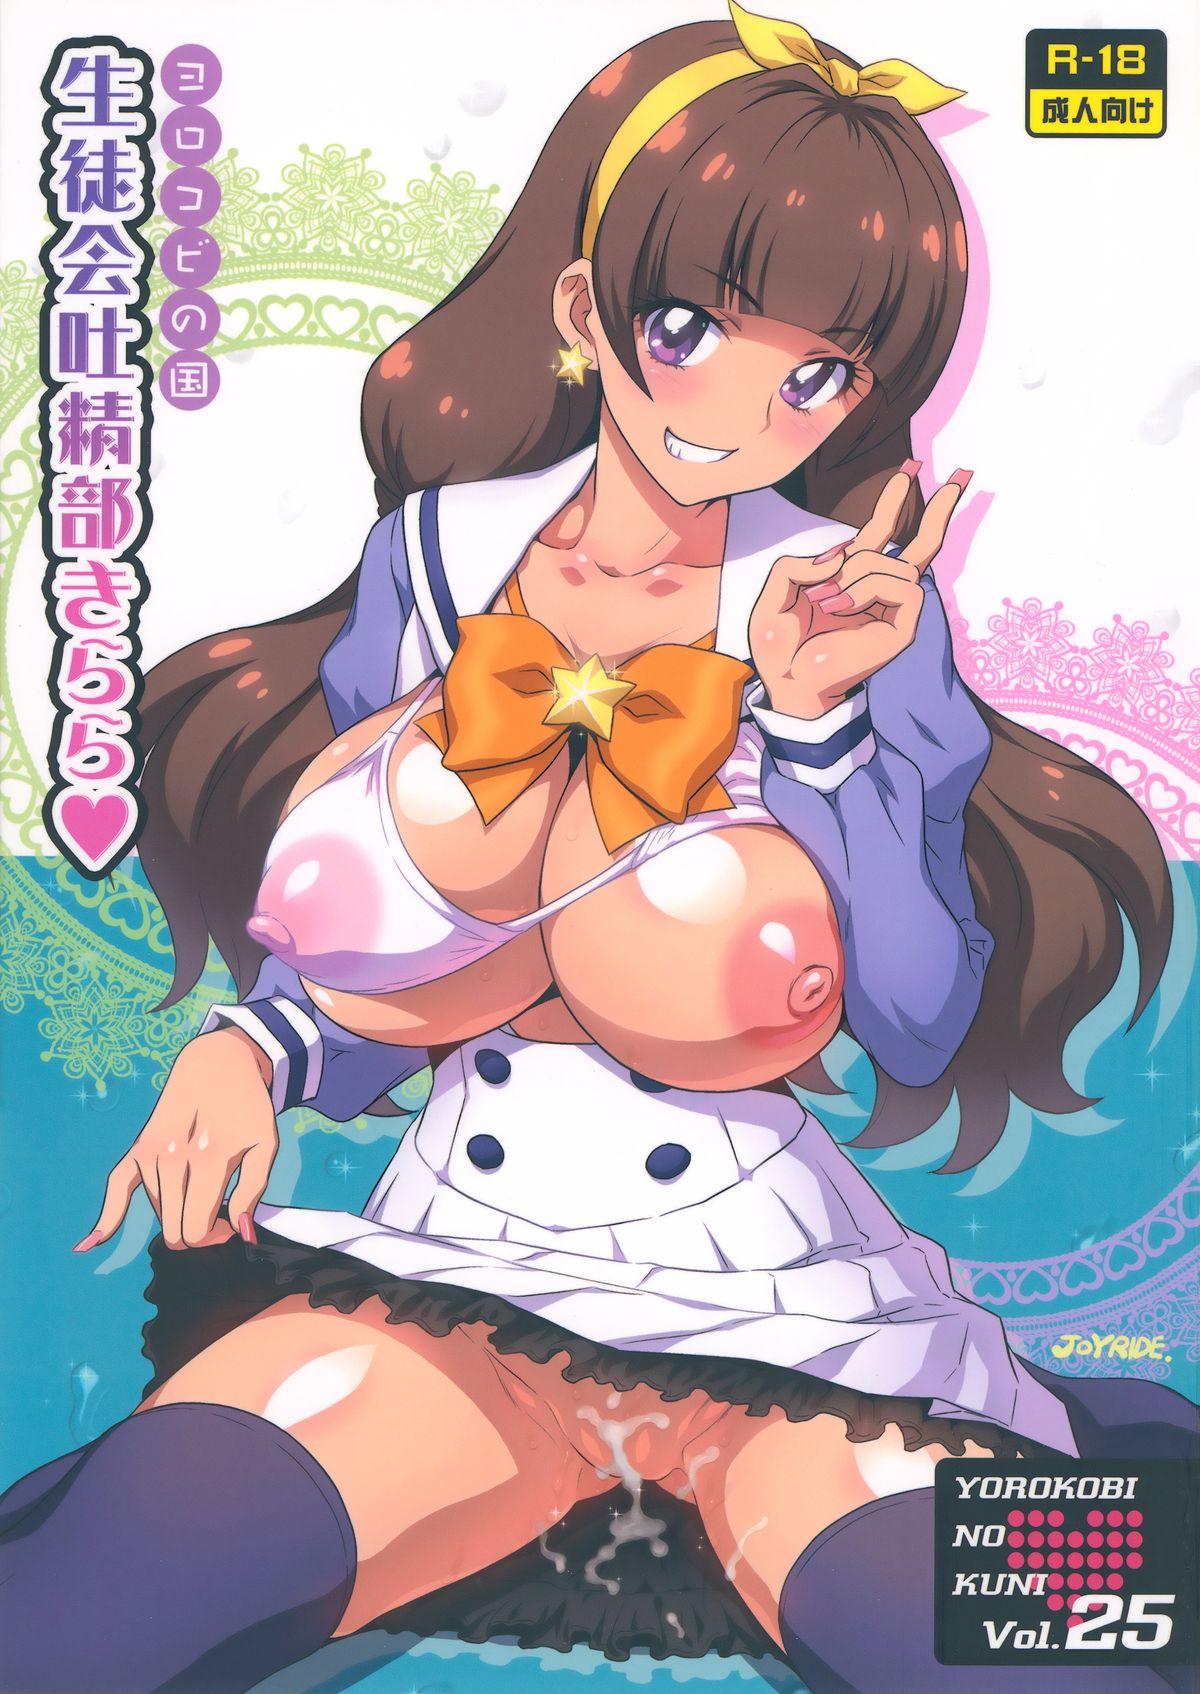 Yorokobi no Kuni Vol. 25 Seitokai Toseibu Kirara 0